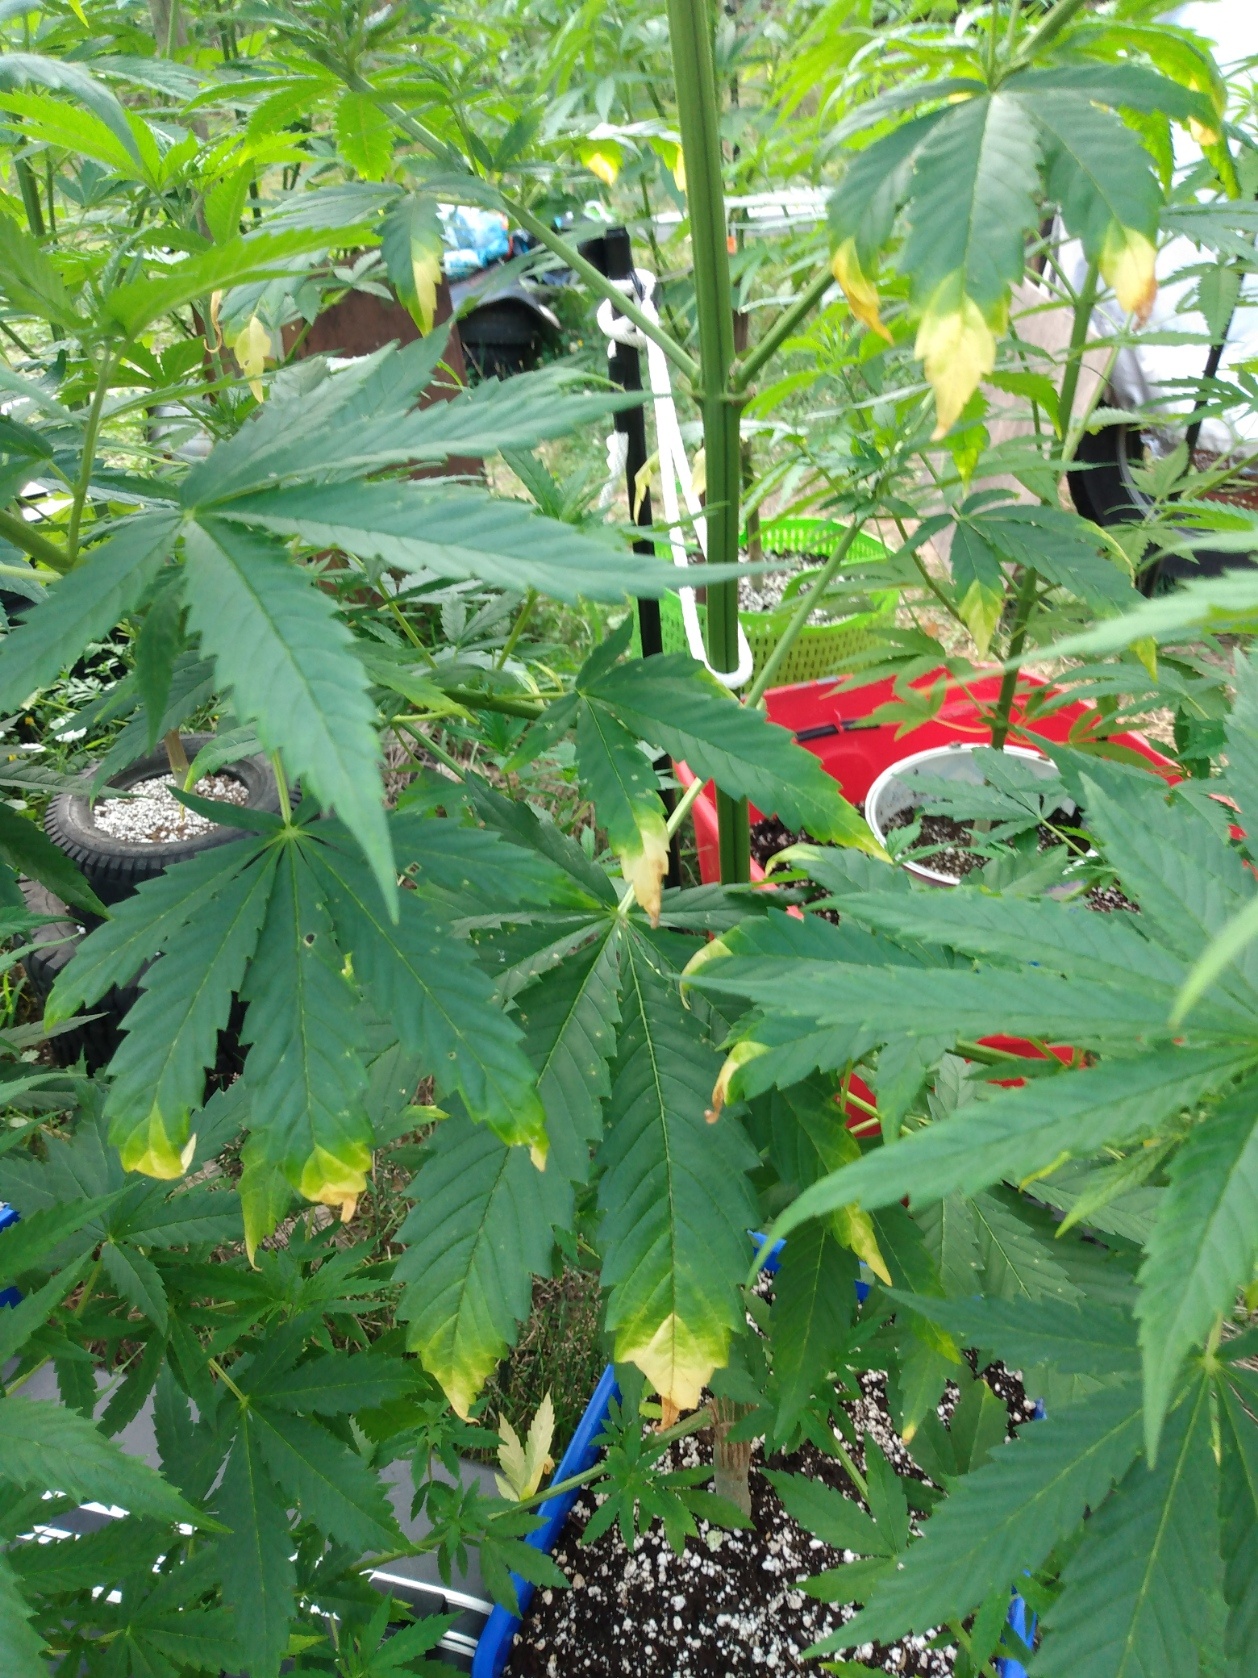 Cannabis leaf symptoms on my plants 6